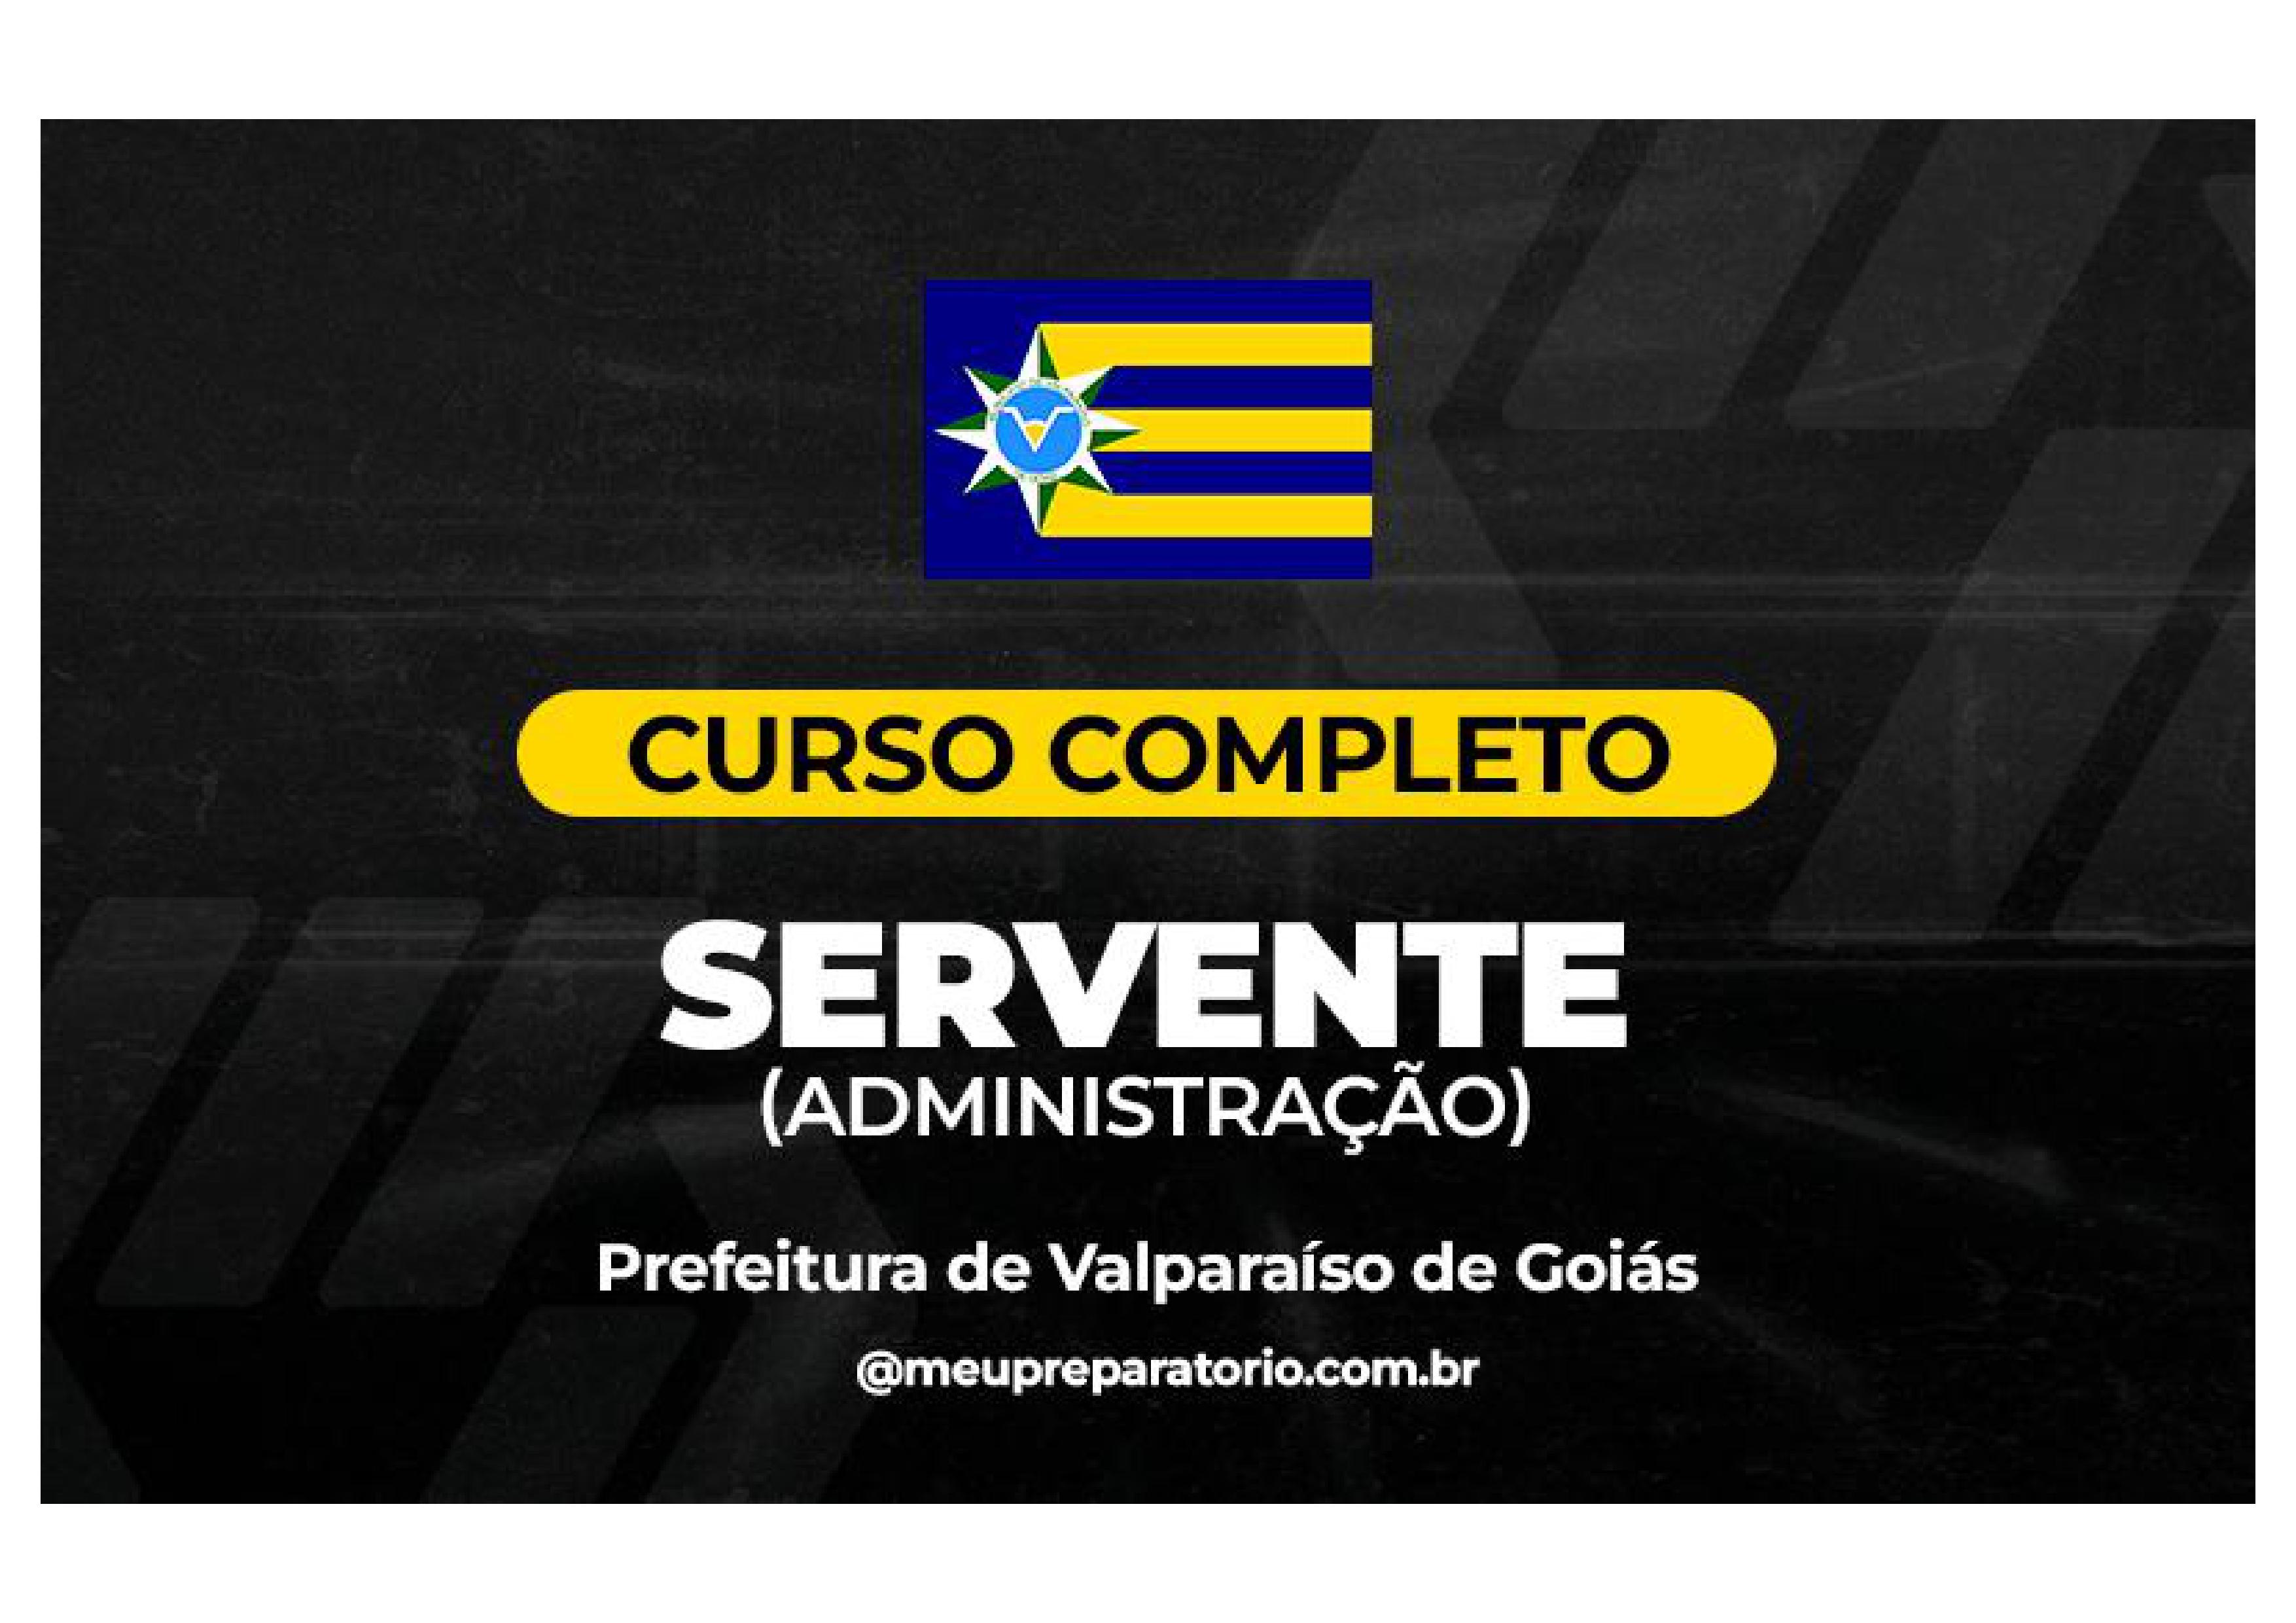 Servente (Administração) - Valparaíso (GO)